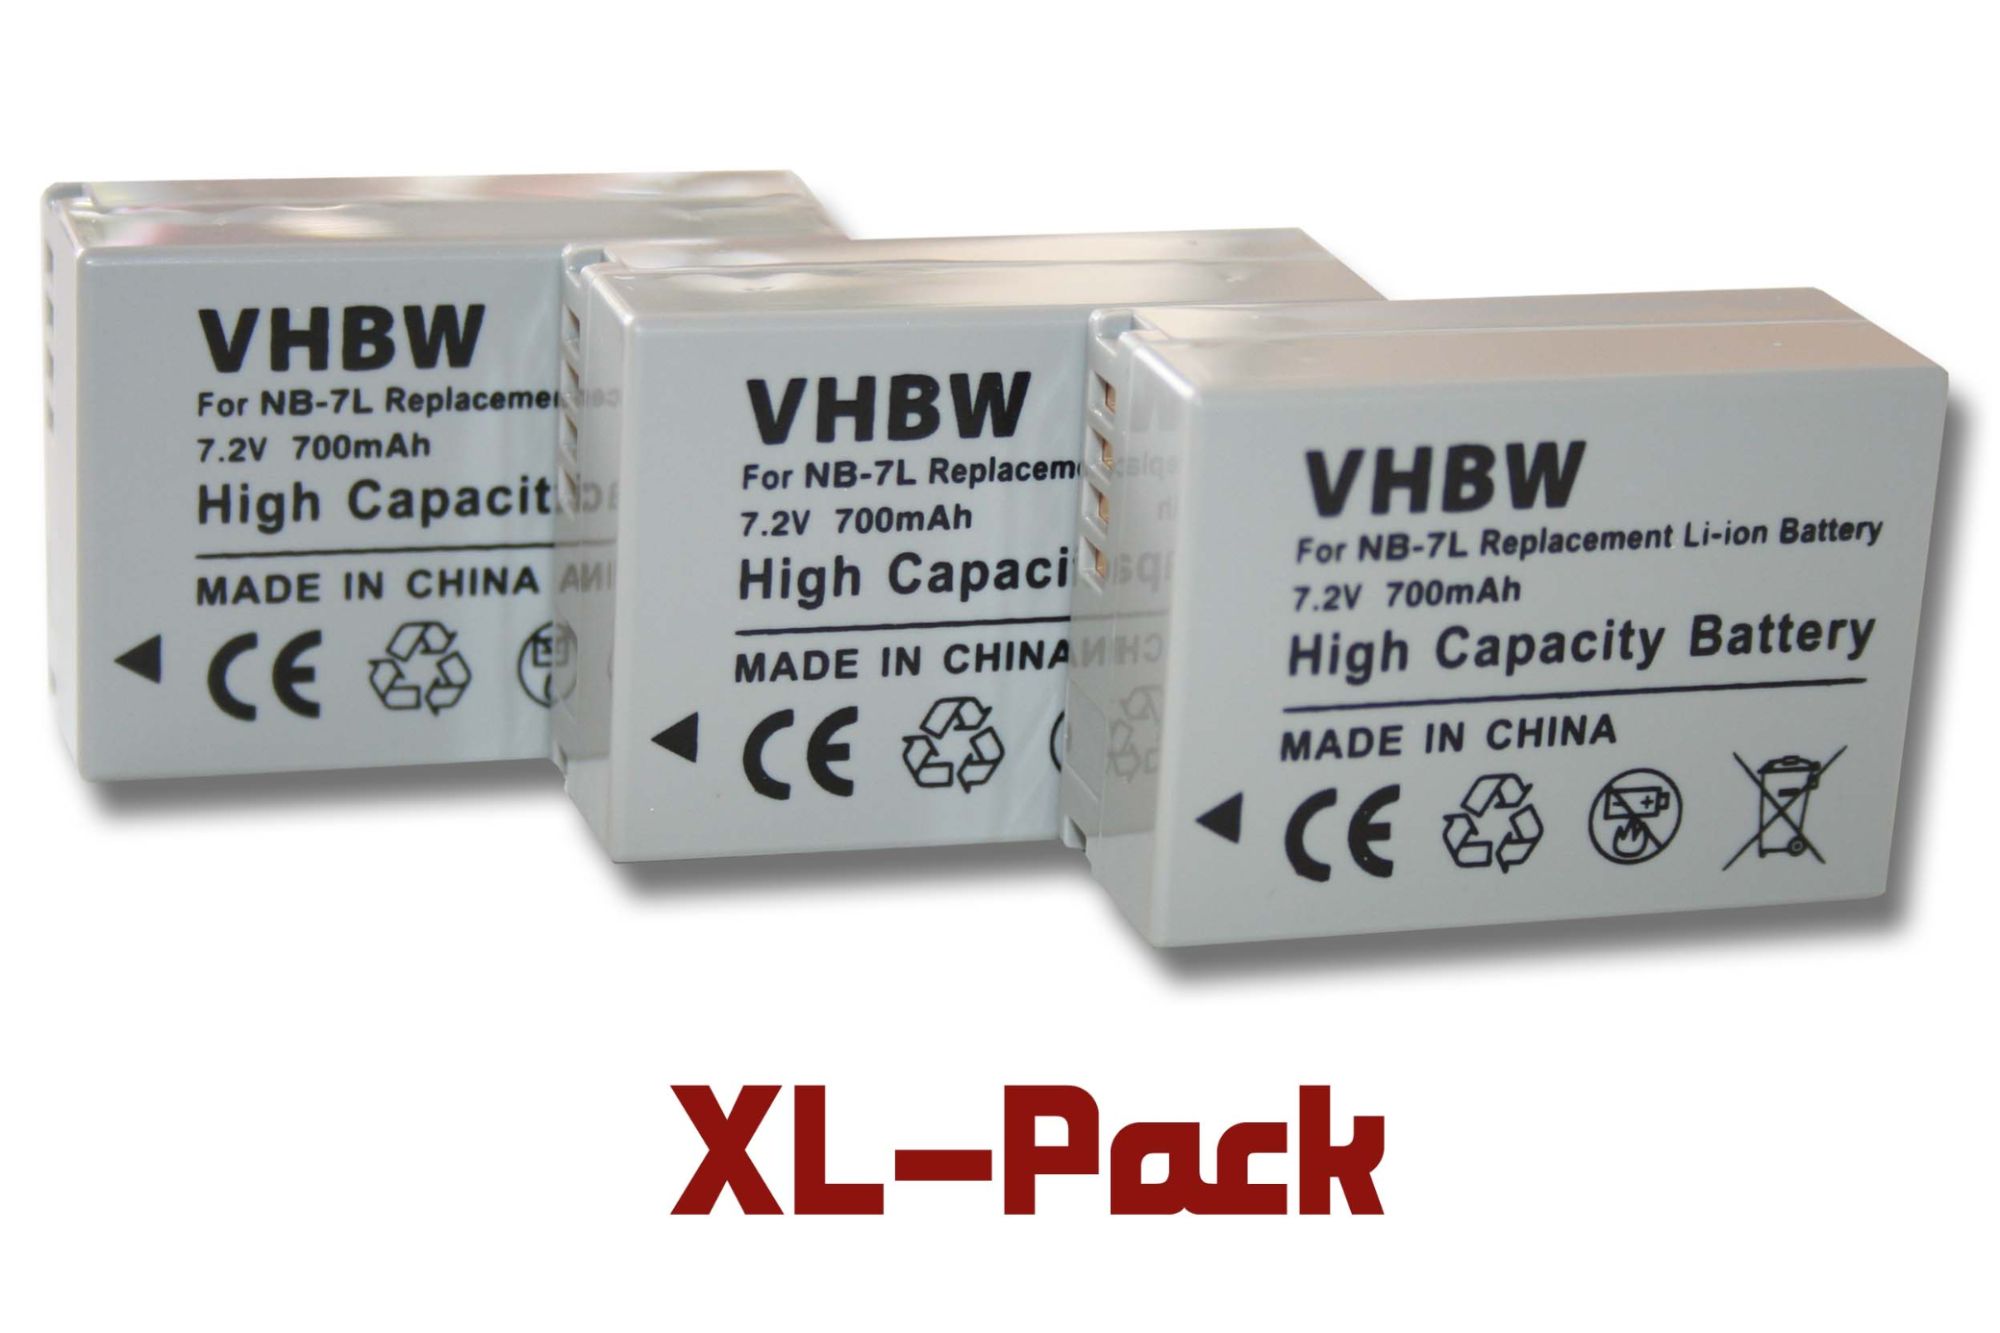 3 x batterie Li-Ion 700mAh (7.2V) pour appareil photo Canon Powershot G10, G11, G12, SX30 IS, etc. Remplace : NB-7L.